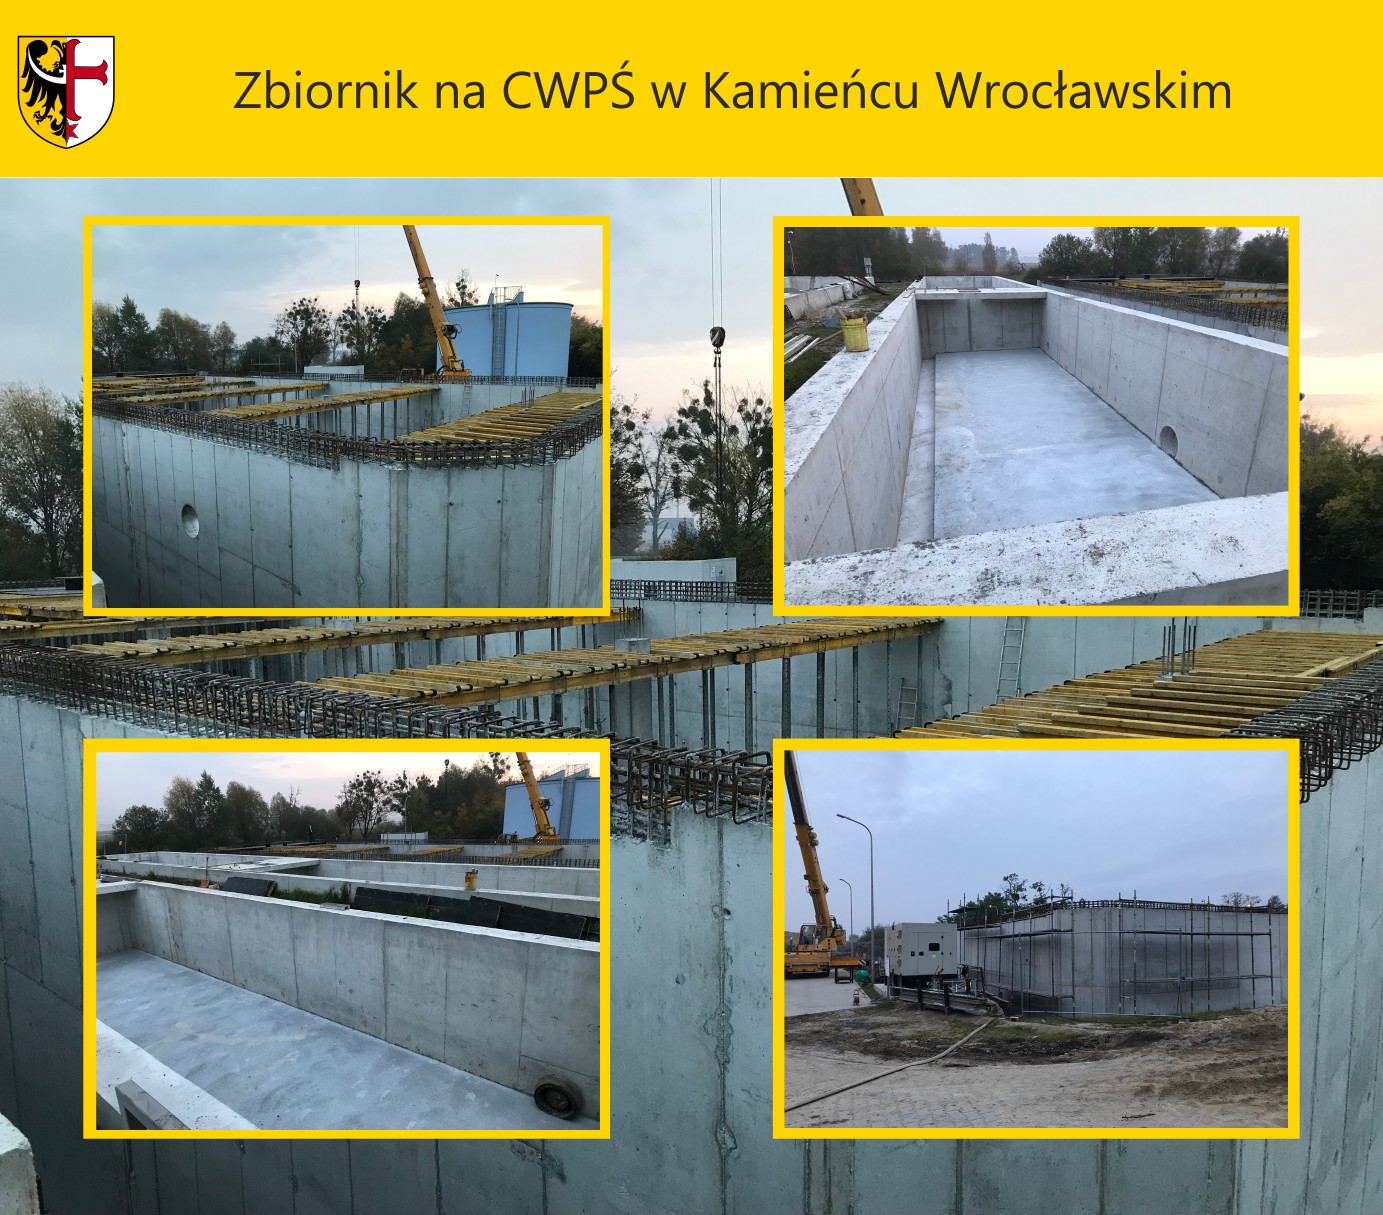 Zbiornik na CWPŚ w Kamieńcu Wrocławskim